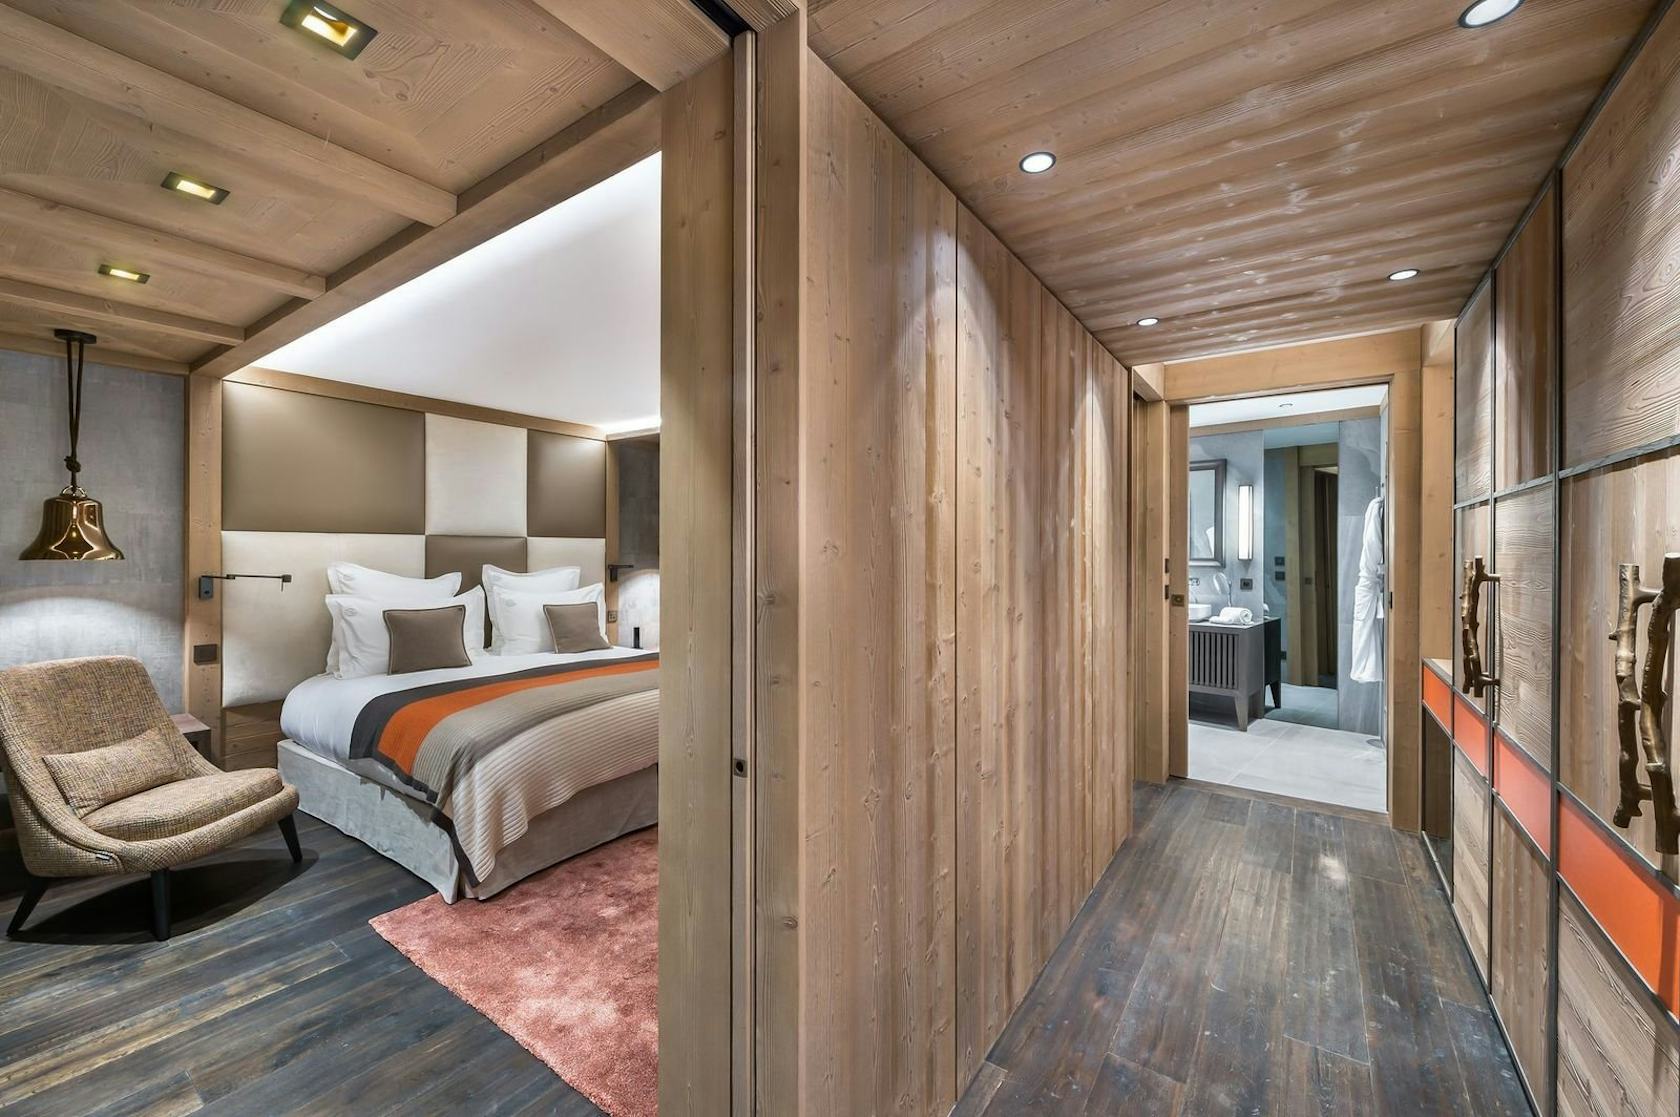 wood interior design indoors housing building hardwood bedroom room flooring